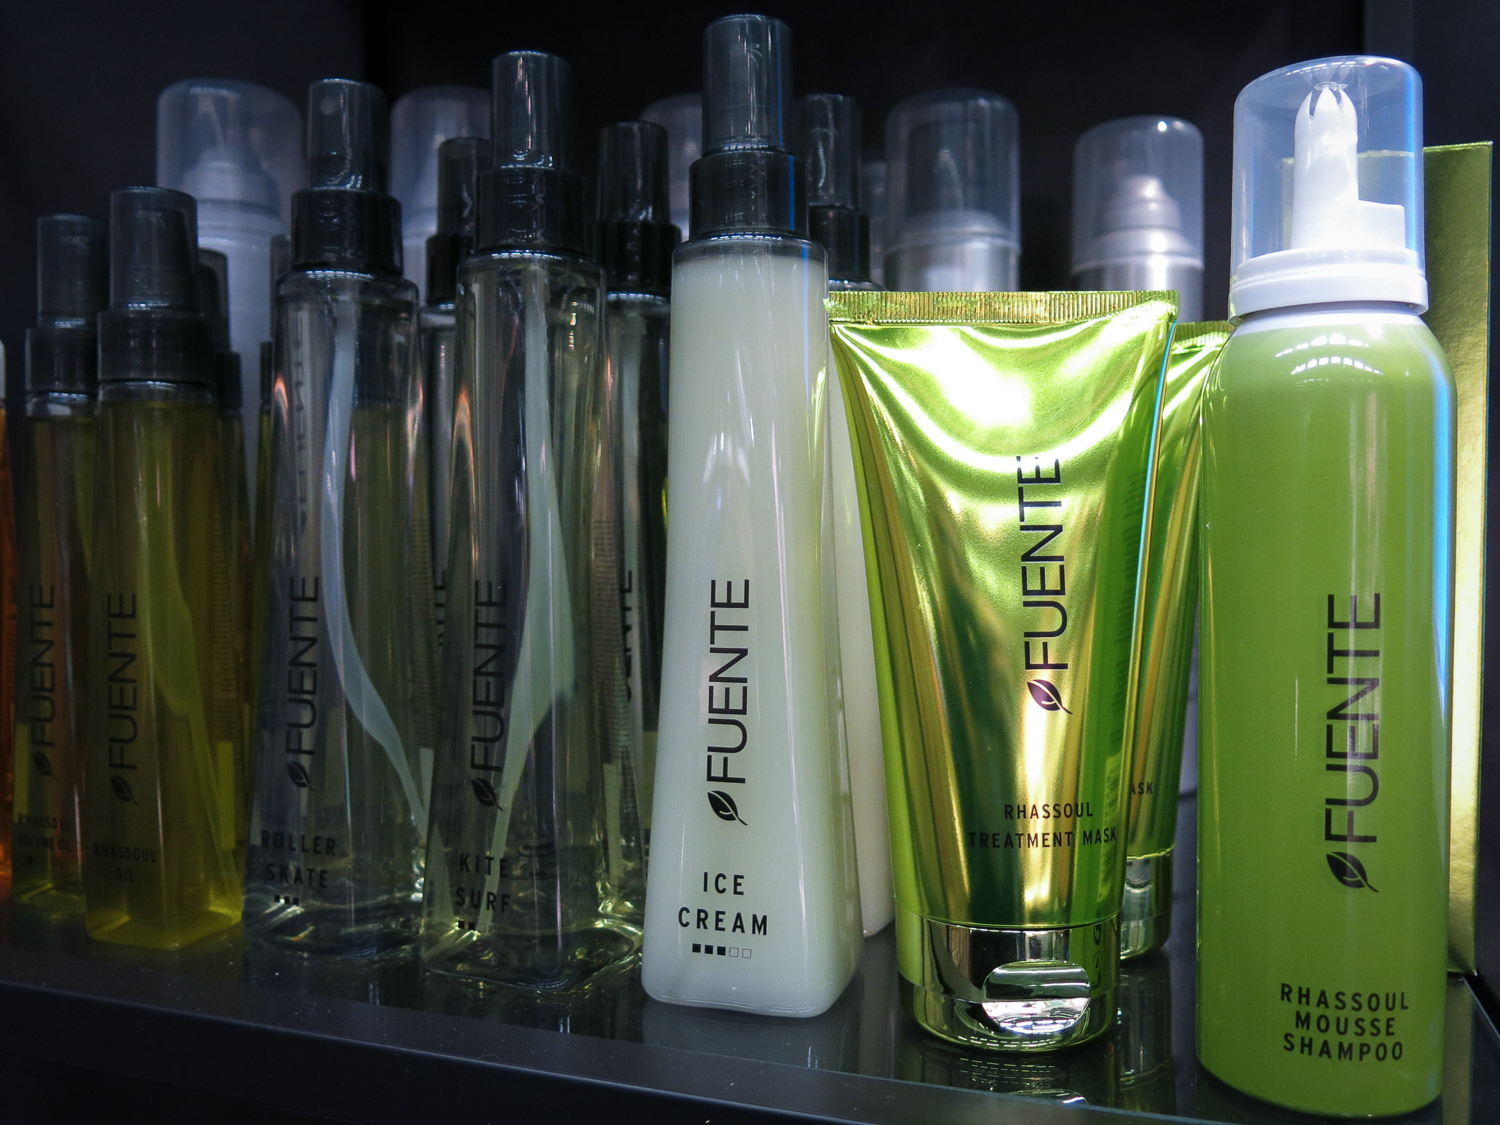 Fuente har även härliga ekooljor och andra sulfatfria schampo som du hittar på hårsalonger.